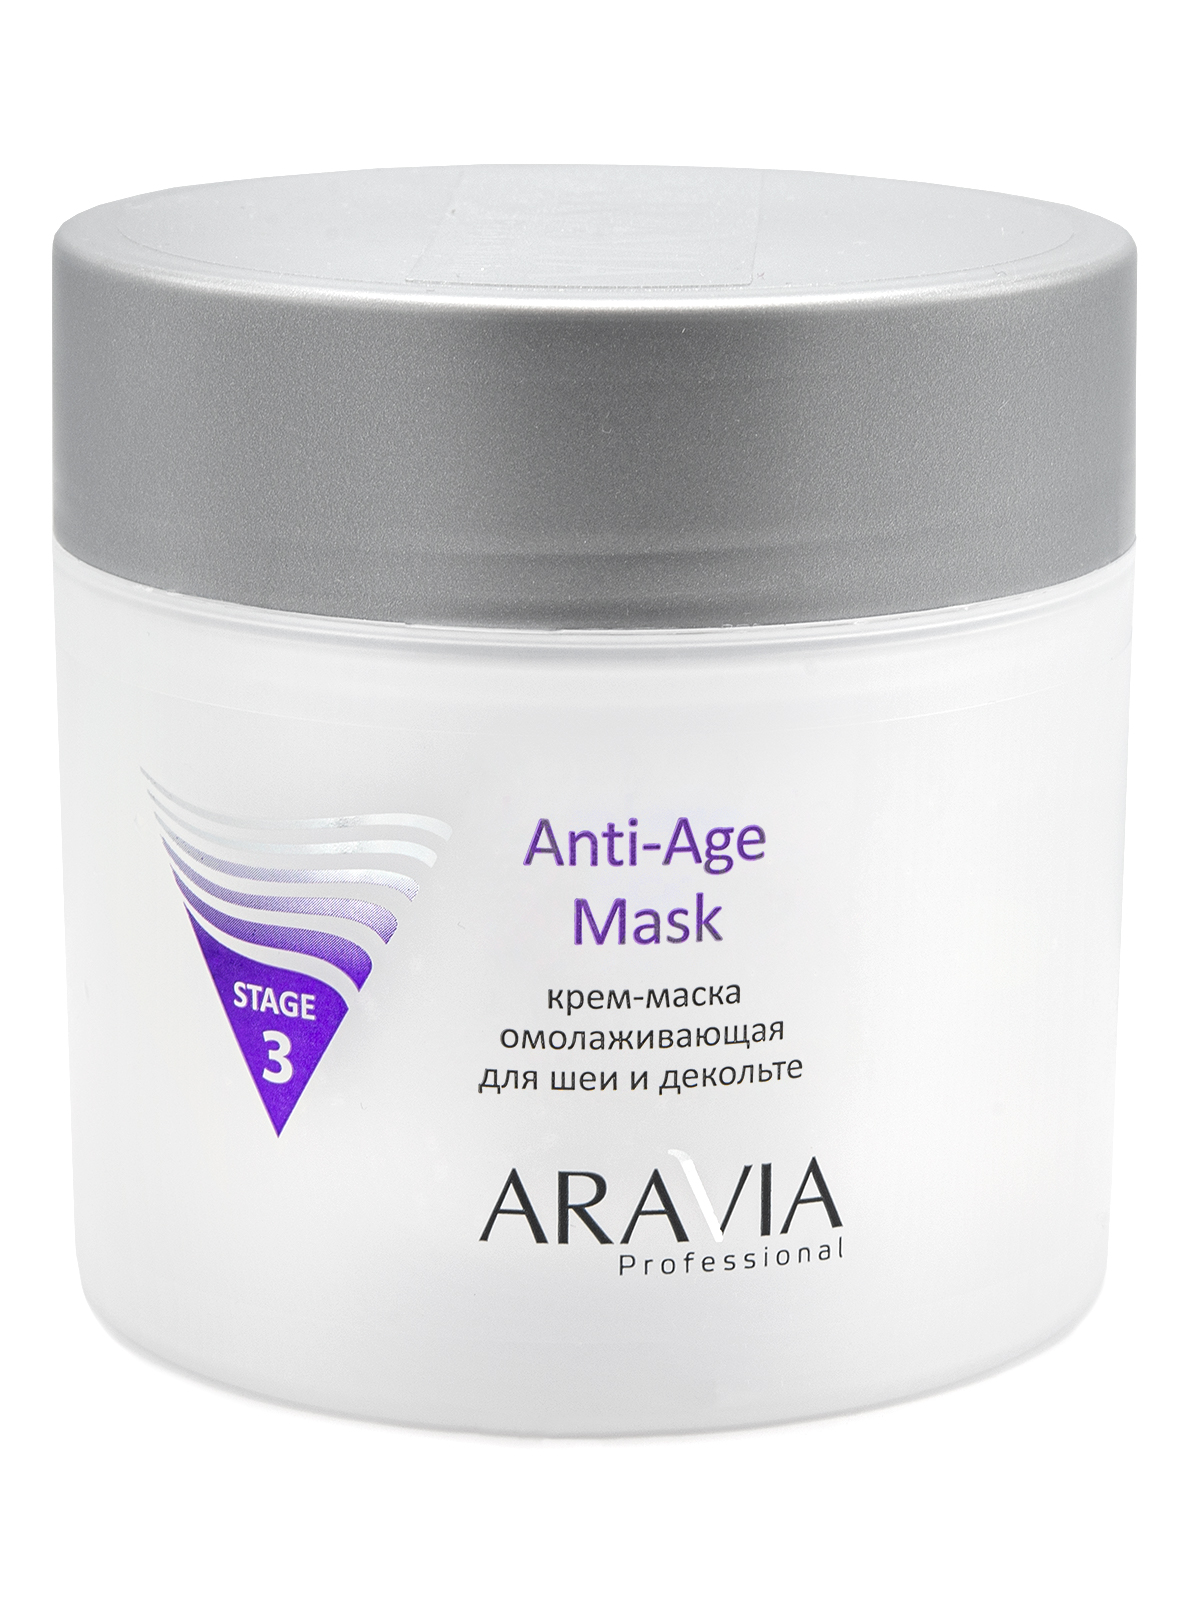 Крем-маска омолаживающая для шеи и декольте Anti-Age Mask, 300 мл, ARAVIA Professional